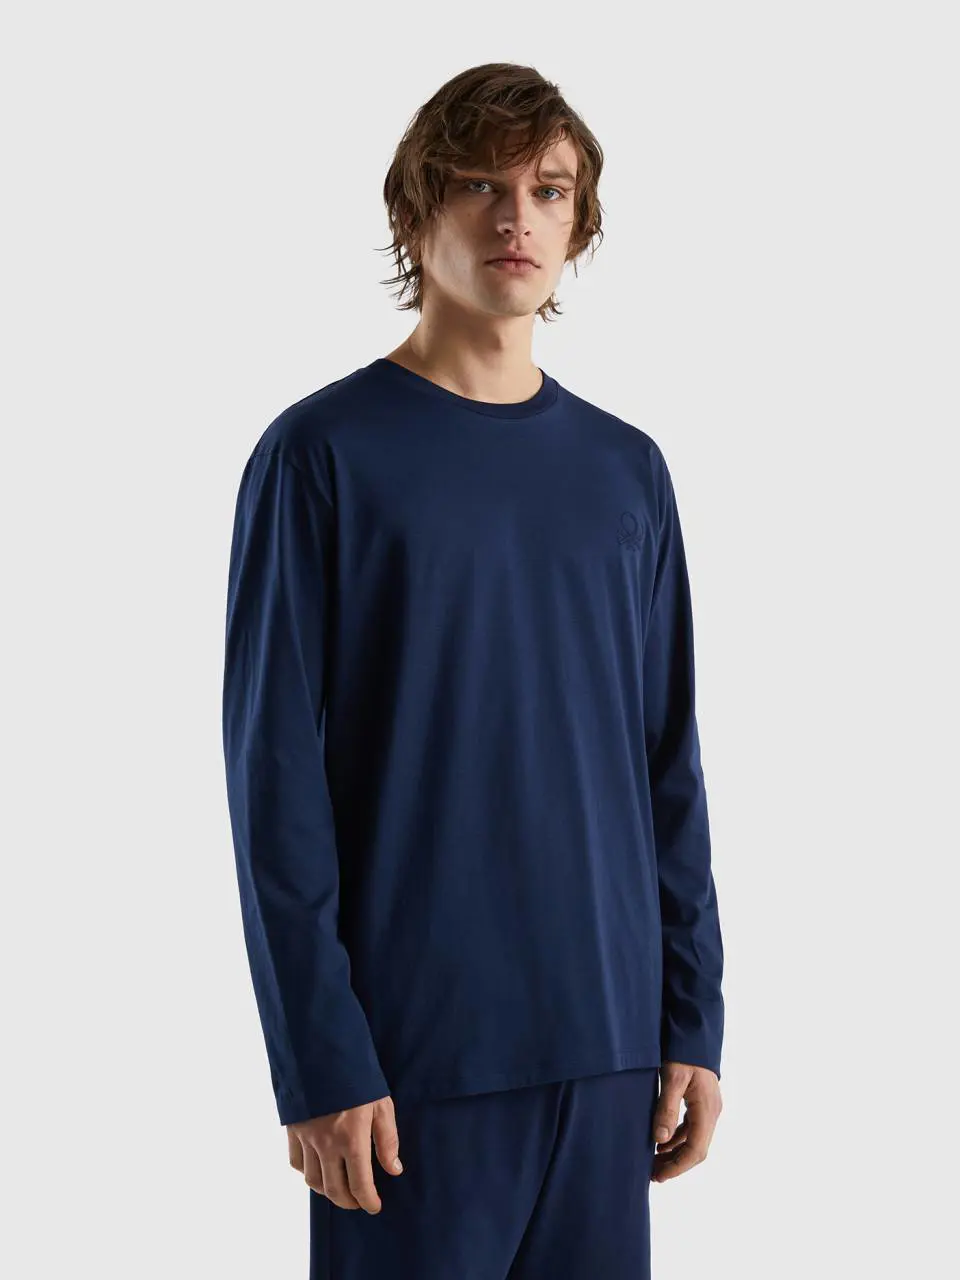 Benetton t-shirt in lightweight cotton. 1